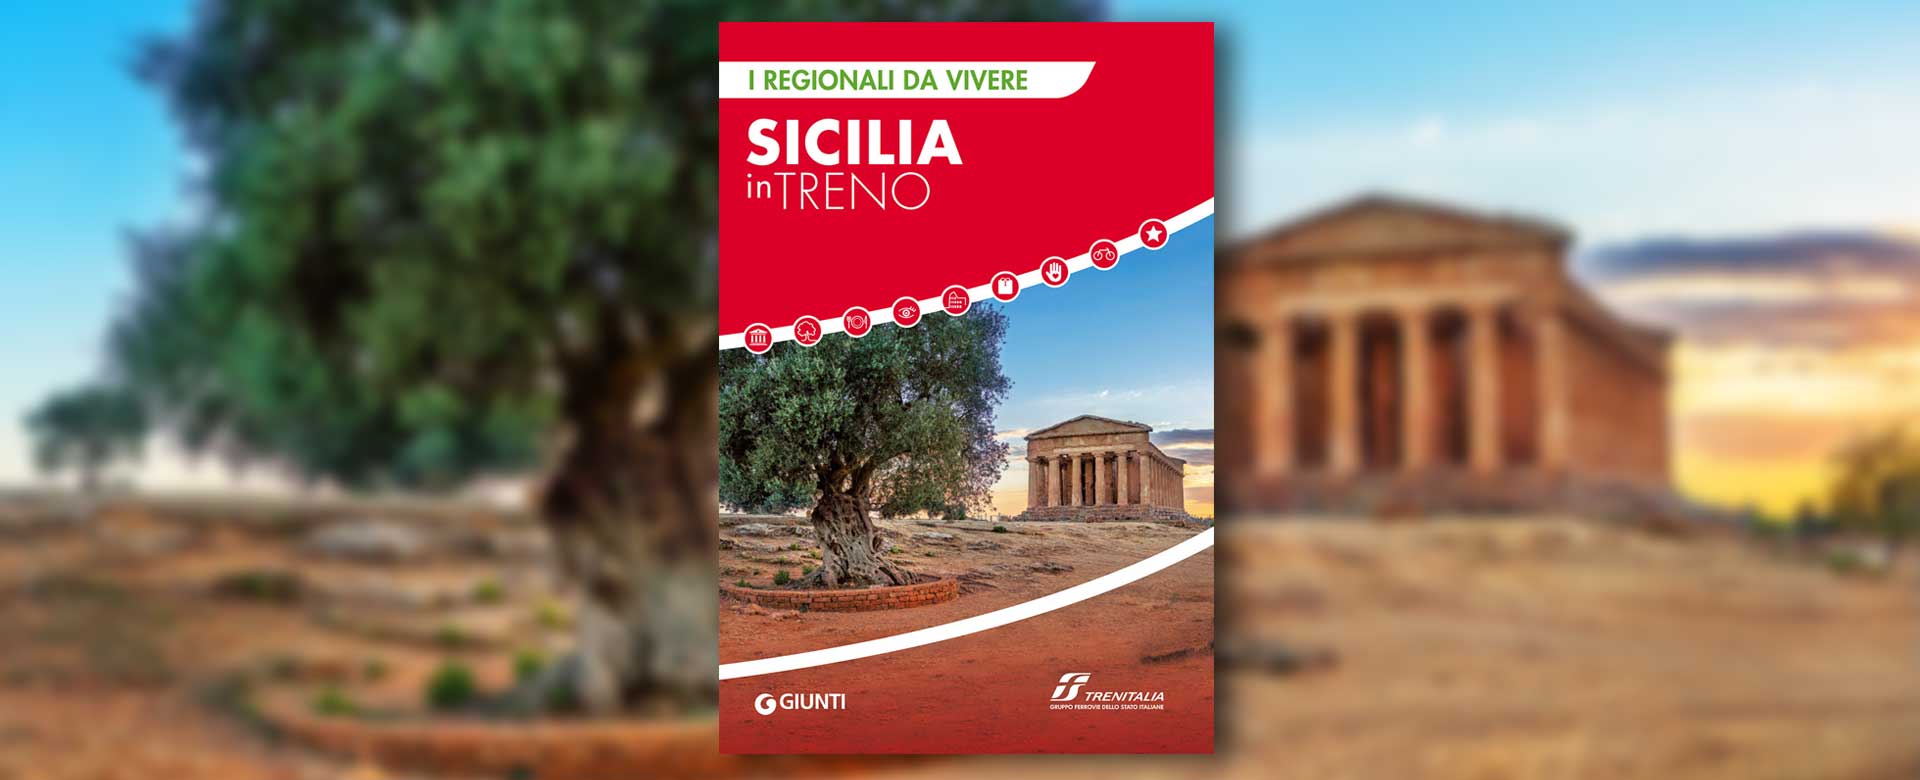 Cover della guida "Sicilia in treno" di Trenitalia e Giunti Editore